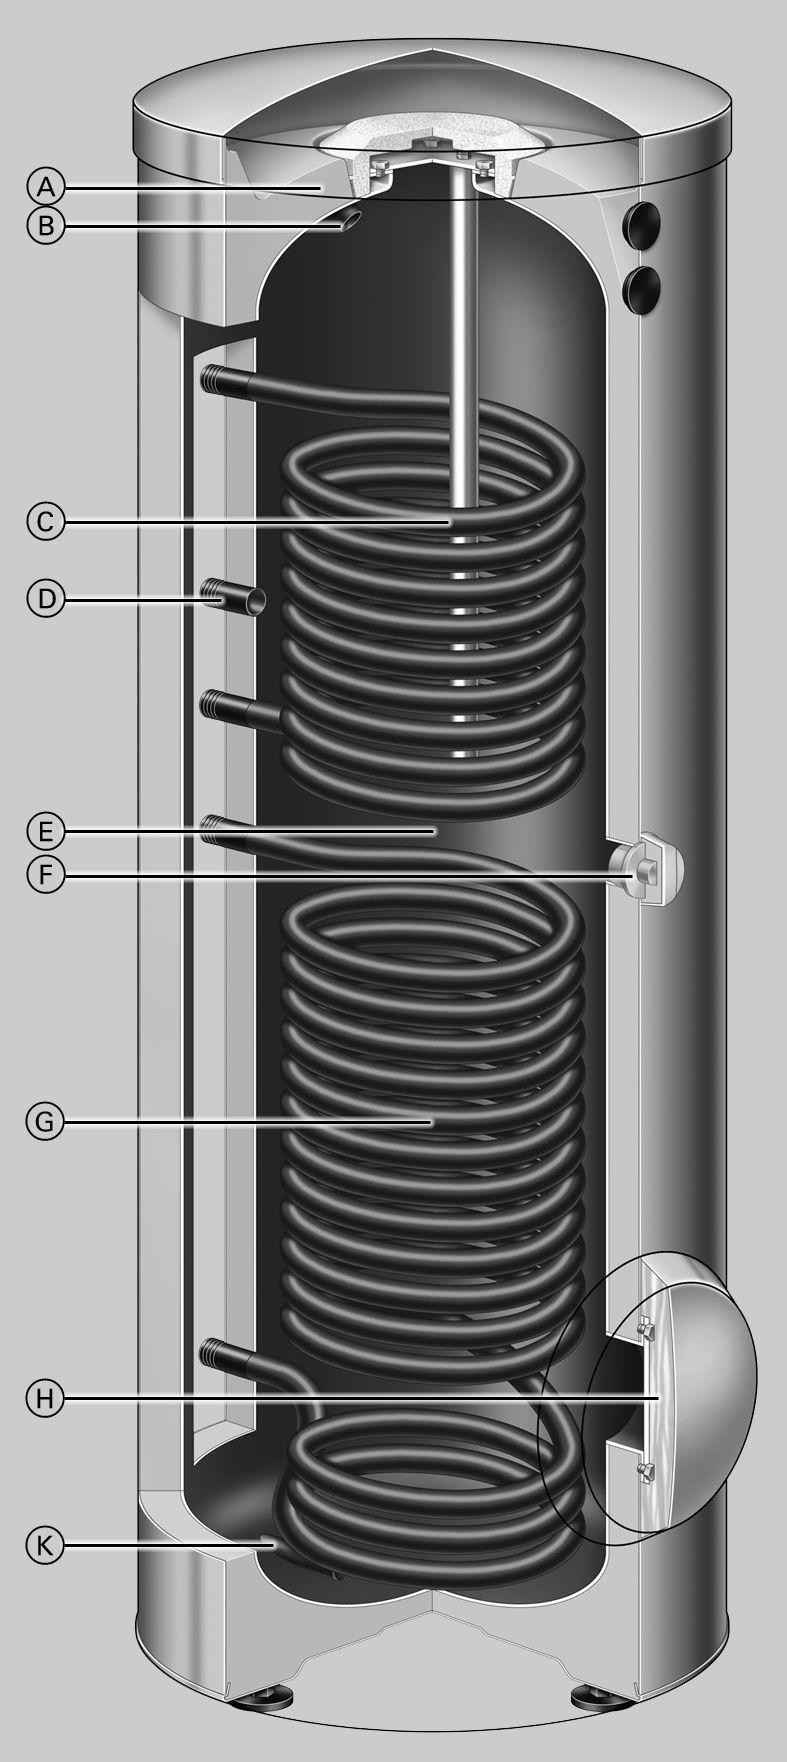 De voordelen op een rij (vervolg) A Zeer efficiënte isolatie rondom (CFK-vrij) B Warm water C Bovenste verwarmingsspiraal tapwater wordt door de verwarmingsspiraal naverwarmd D Circulatie E Boiler